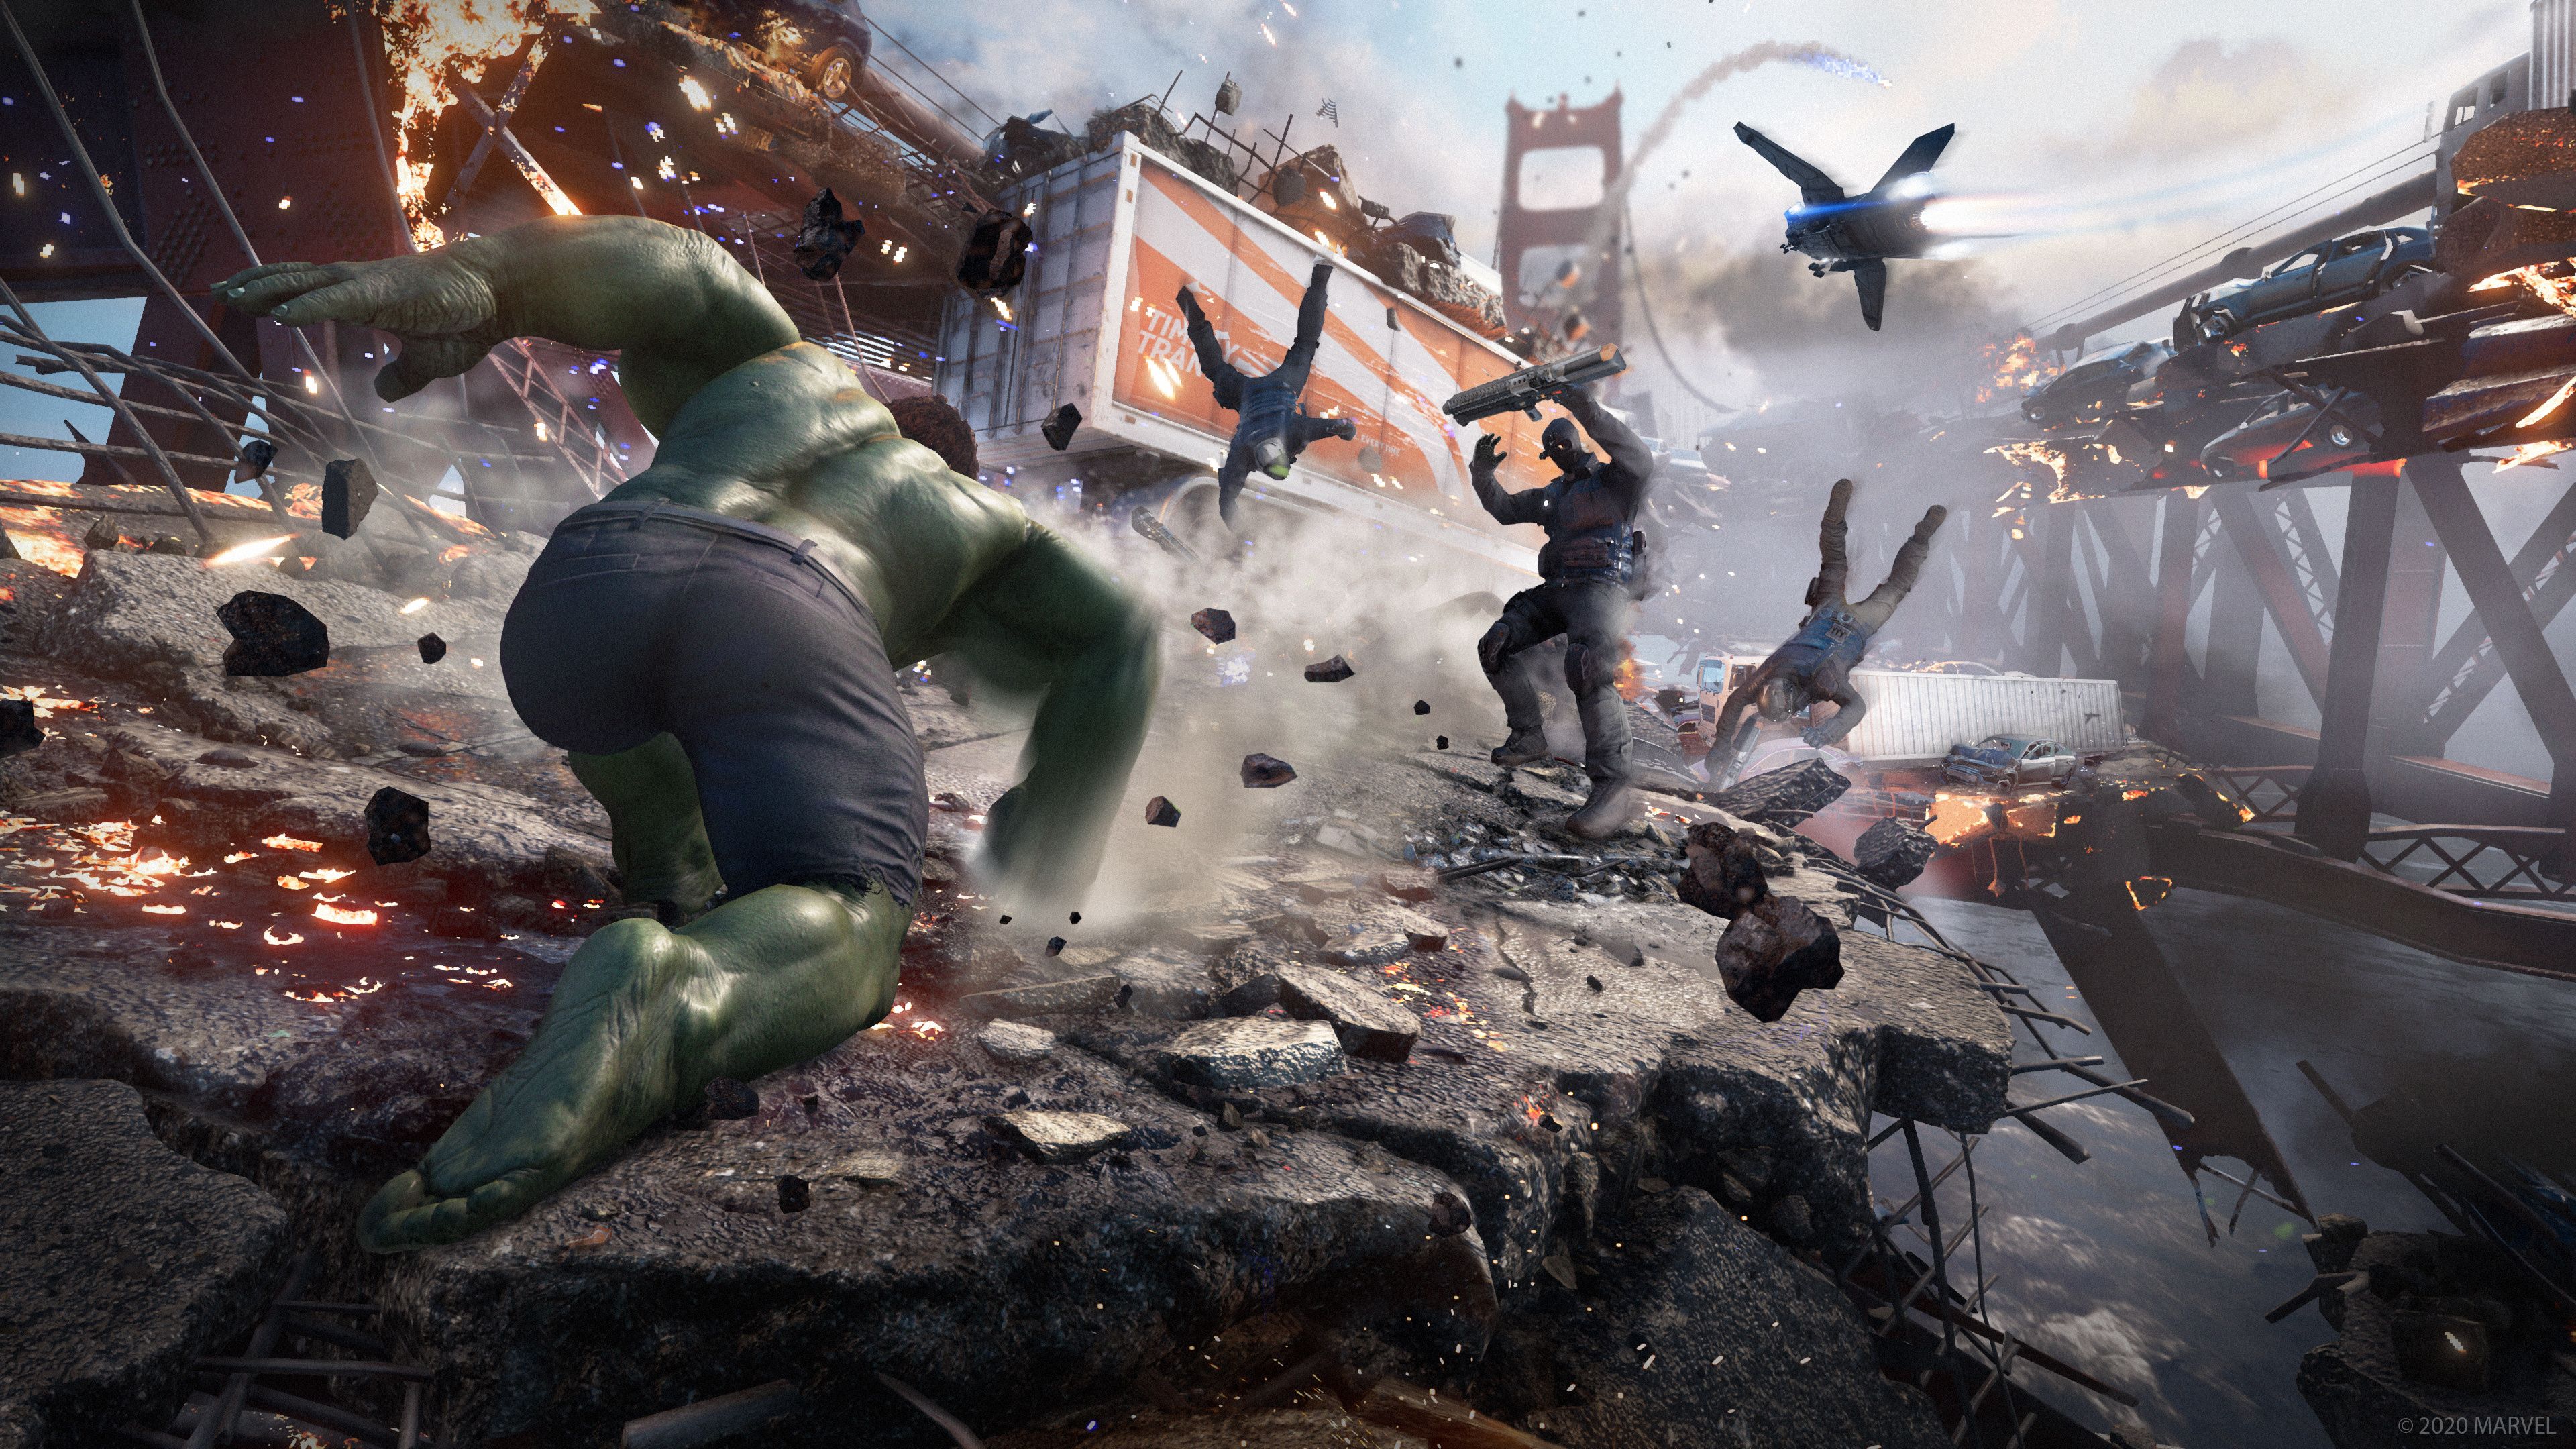 4K & HD Marvel's Avengers Desktop Wallpaper for Your Next Background